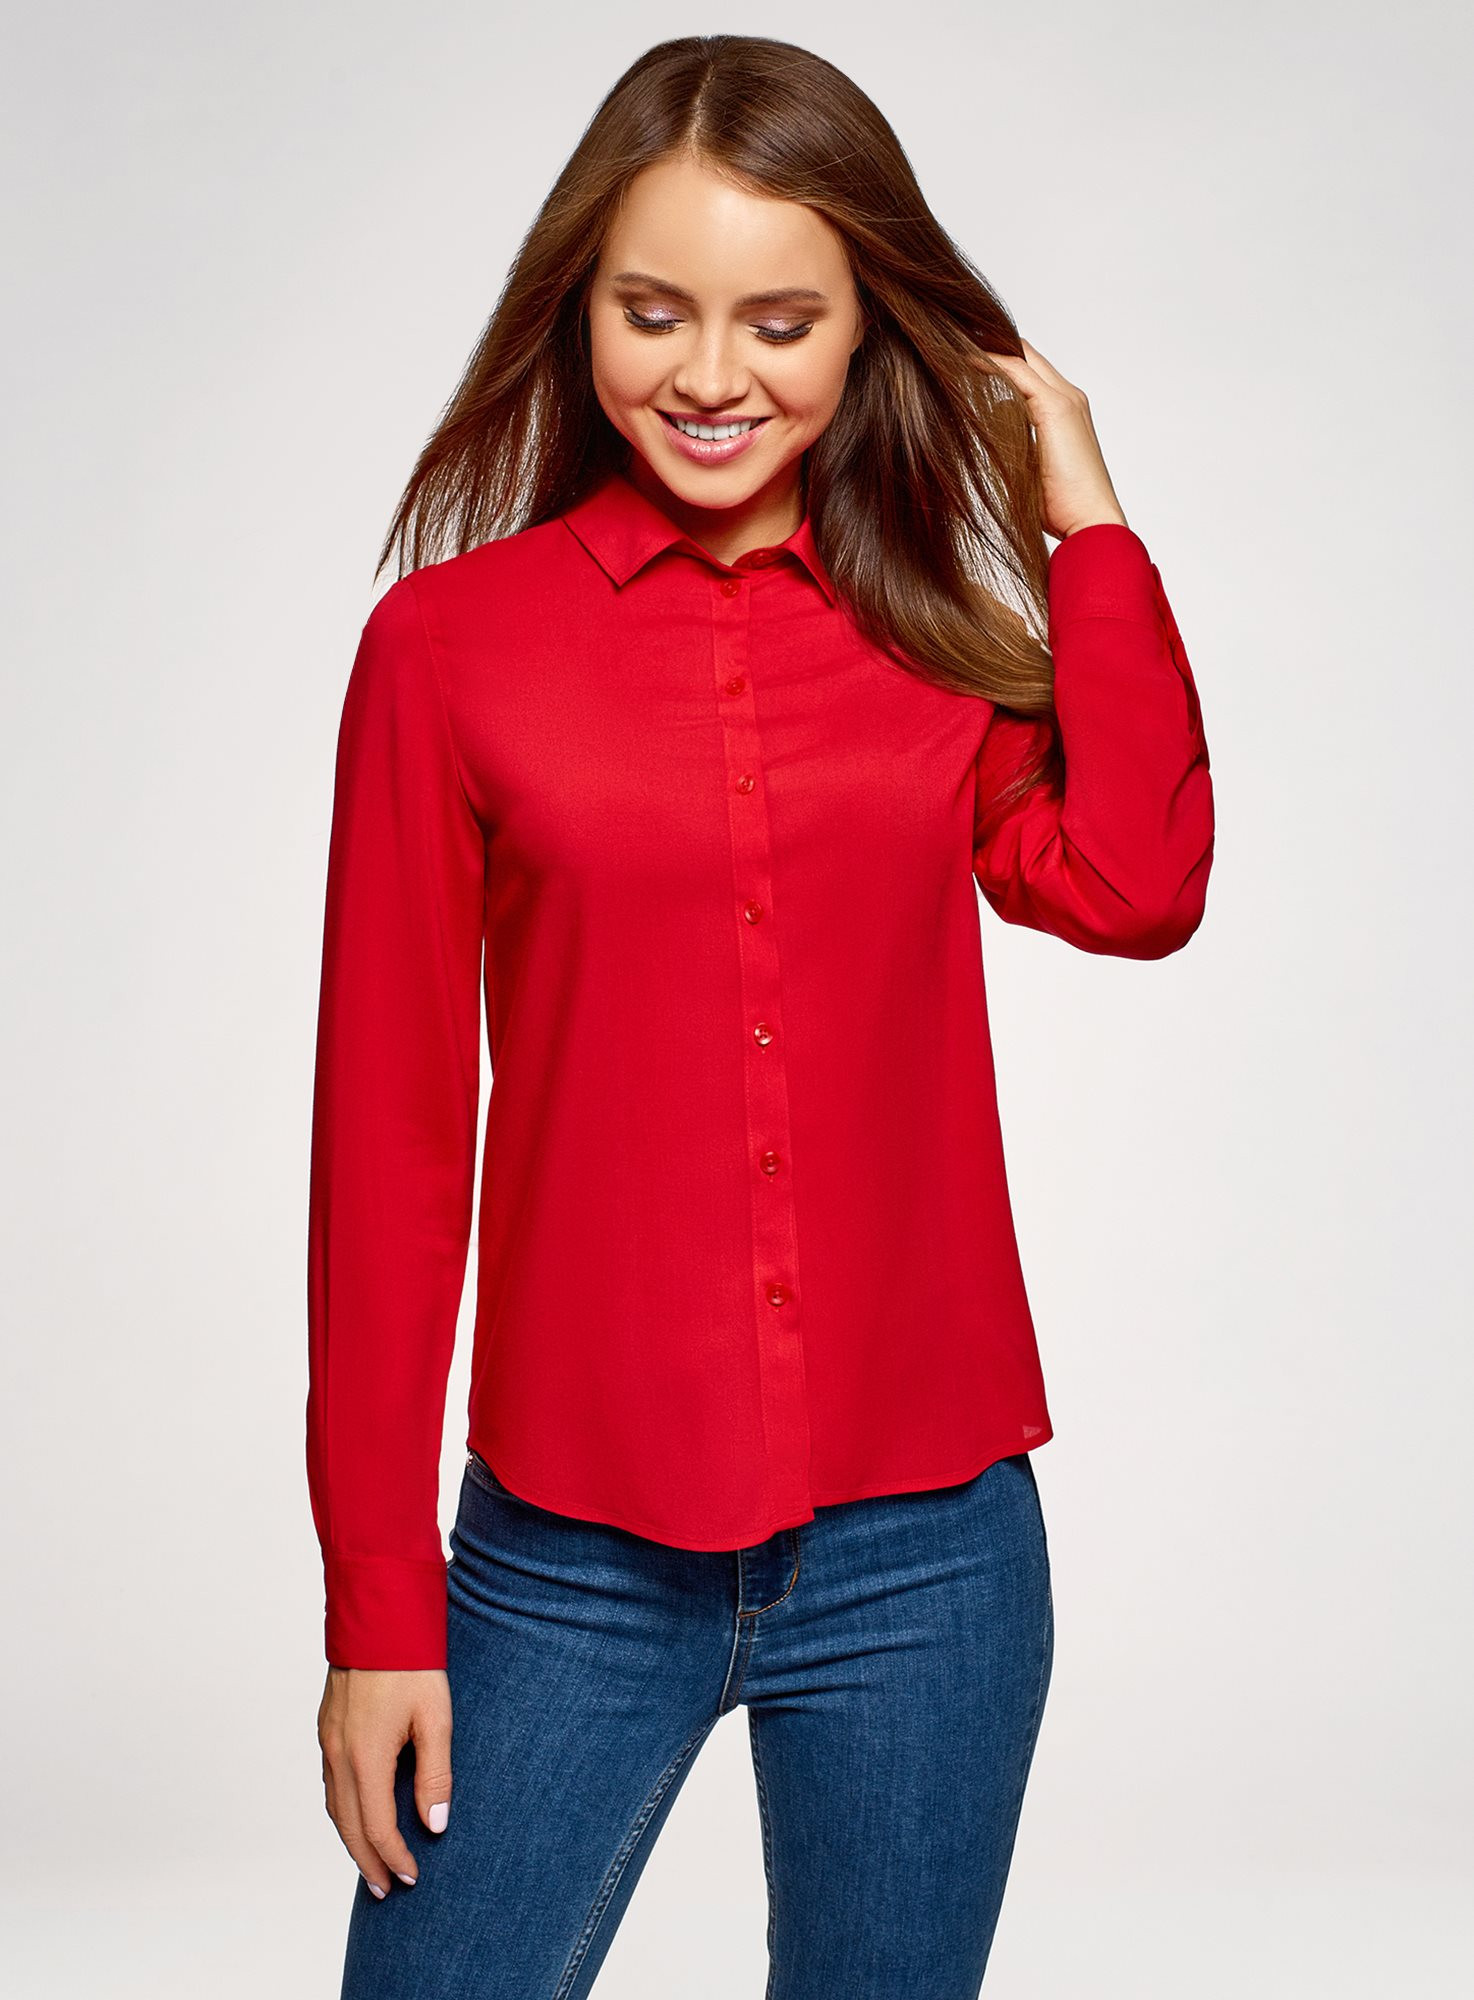 Красные блузки женская. Oodji блузка красная. Oodji красная кофта. Красная блуза. Блузка с длинным рукавом.